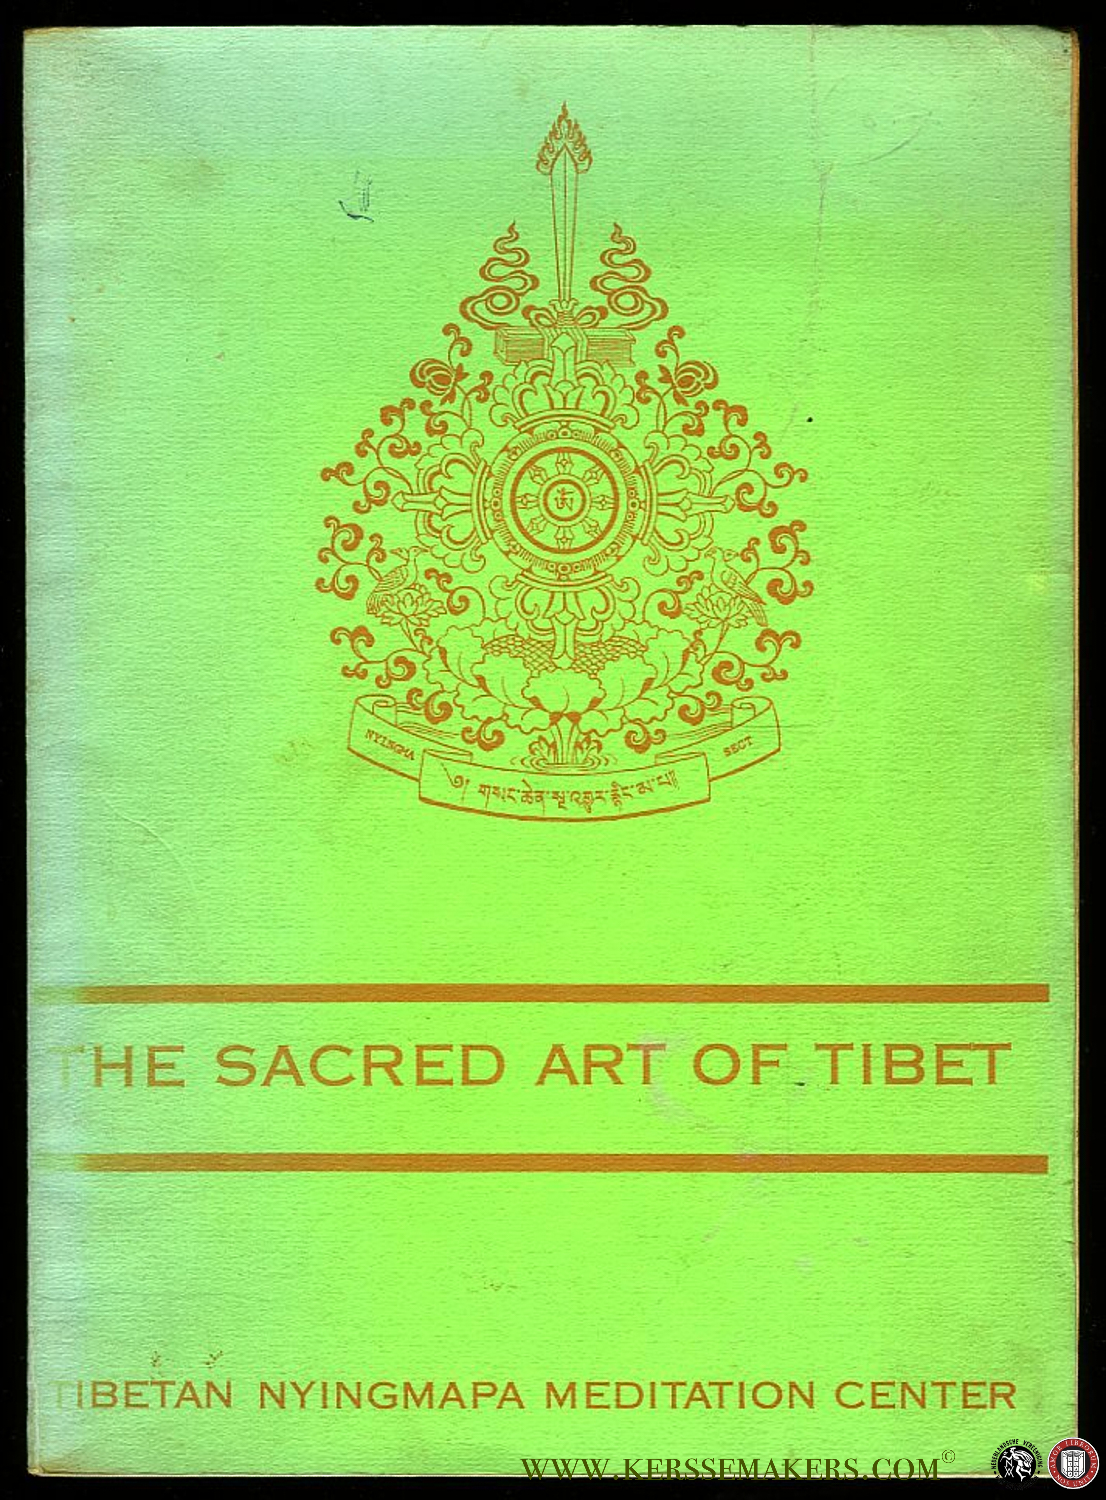 The sacred Art of Tibet - Limited edition of 500 copies - Tarthang Tulku (forword)